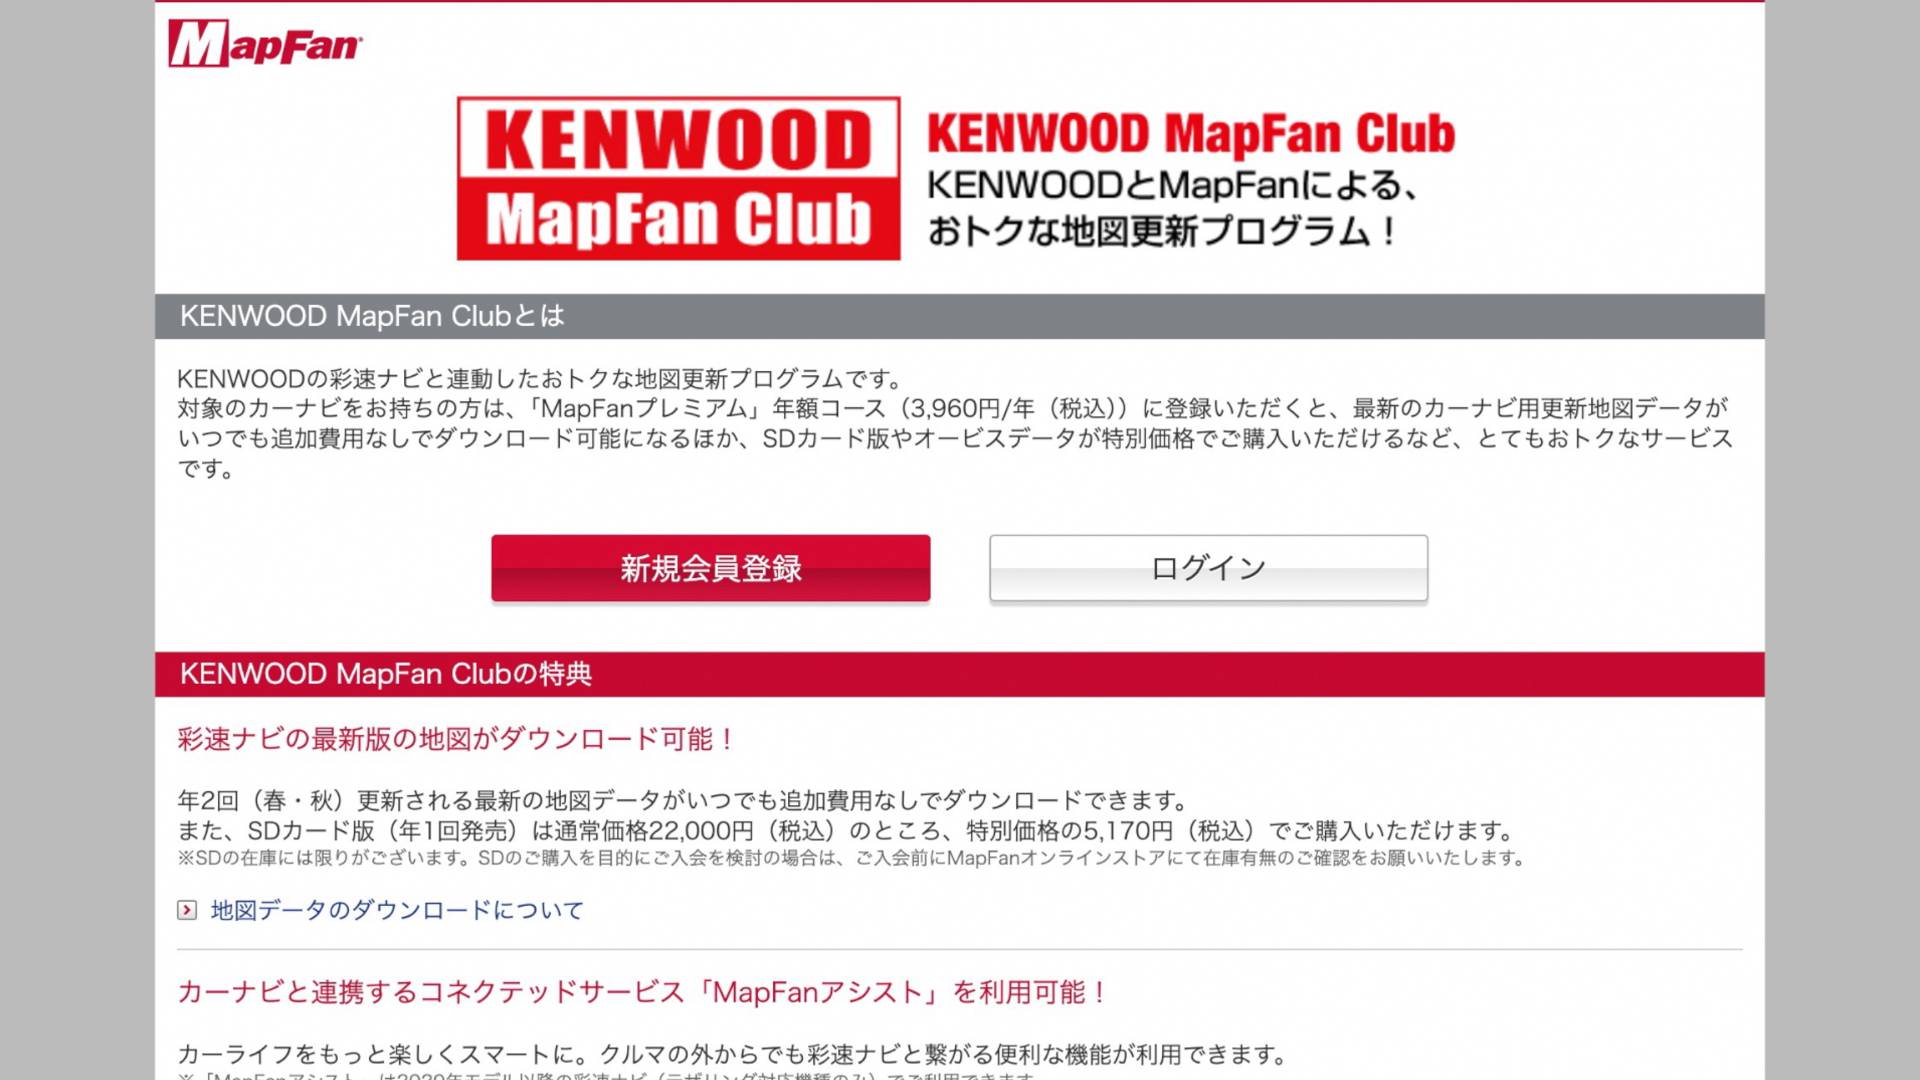 【軽バンカスタマイズ16】KENWOOD彩速ナビの地図データをMapFan Clubに会員登録して無料で2回更新する方法と退会手順